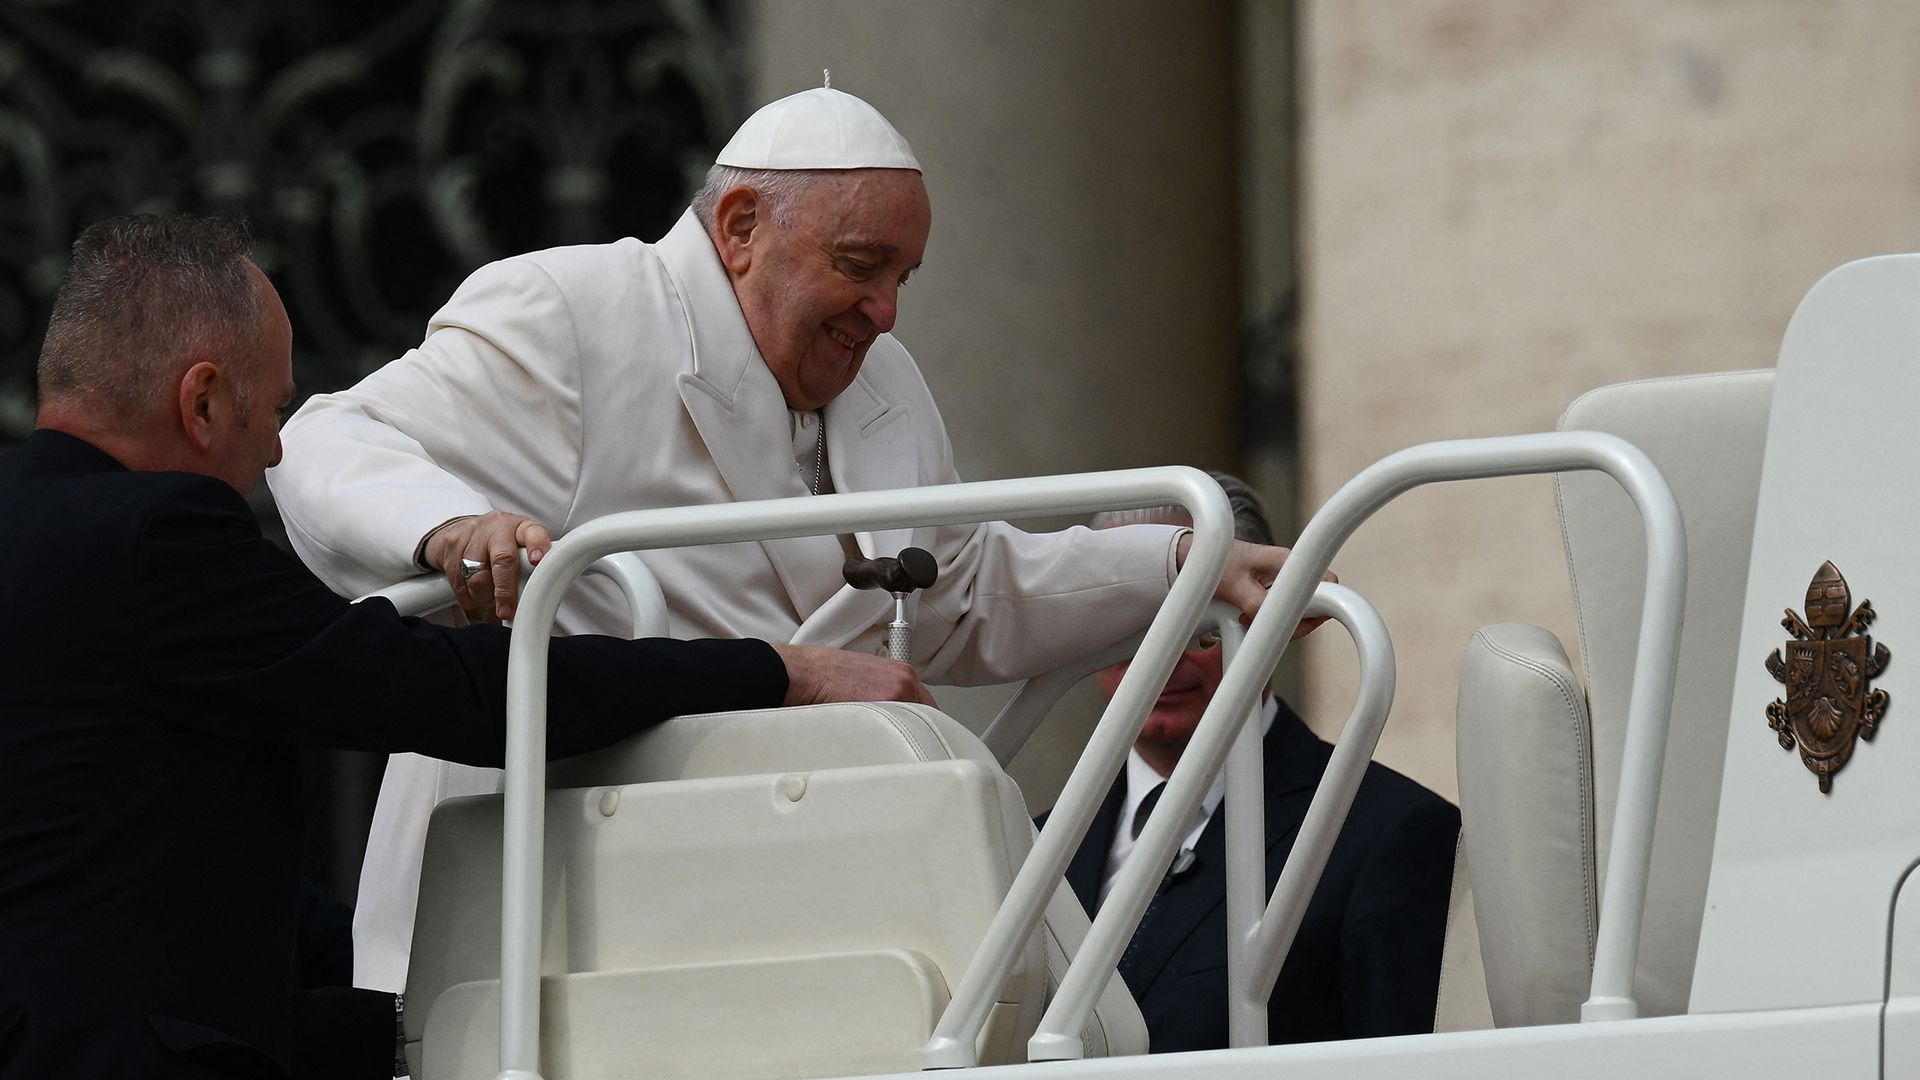 El papa Francisco fue sometido a un TAC del tórax y a otras pruebas médicas, y su estado de salud no preocupa tras los resultados. (AFP)